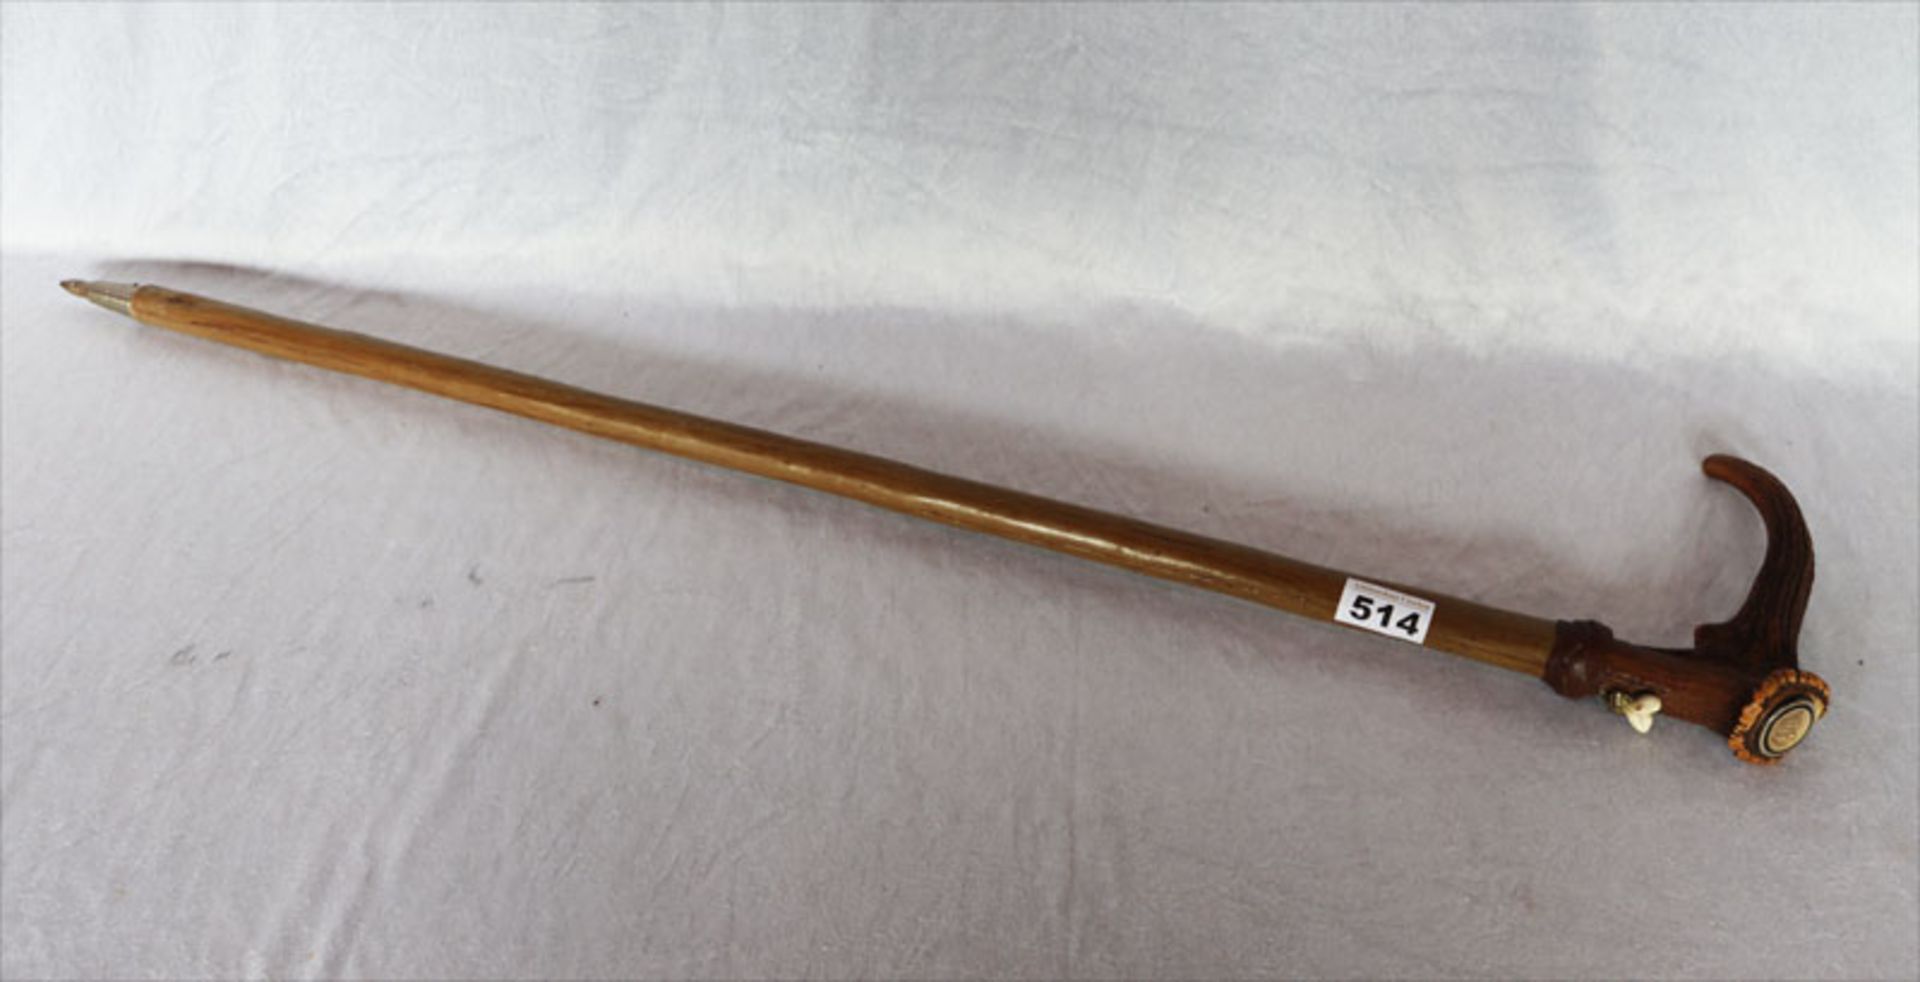 Spazierstock mit Hirschhorngriff und Grandelverzierung, Monogrammgravur, L 91 cm, Gebrauchsspuren